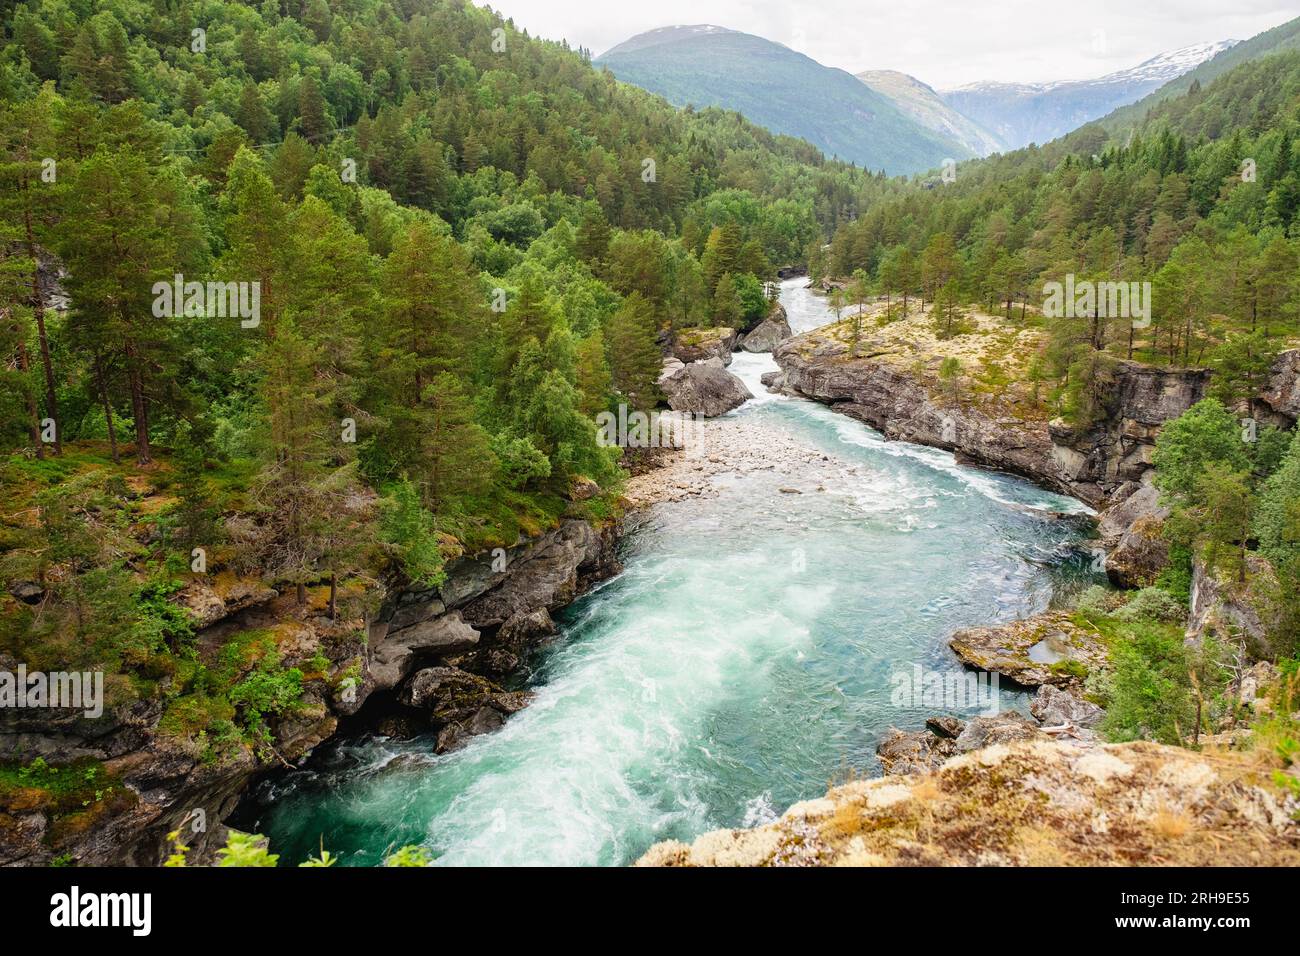 Rapides d'eau vive à travers les chutes de la rivière Rauma dans la vallée de Romsdal. Andalsnes, Møre og Romsdal, Norvège, Scandinavie, Europe Banque D'Images